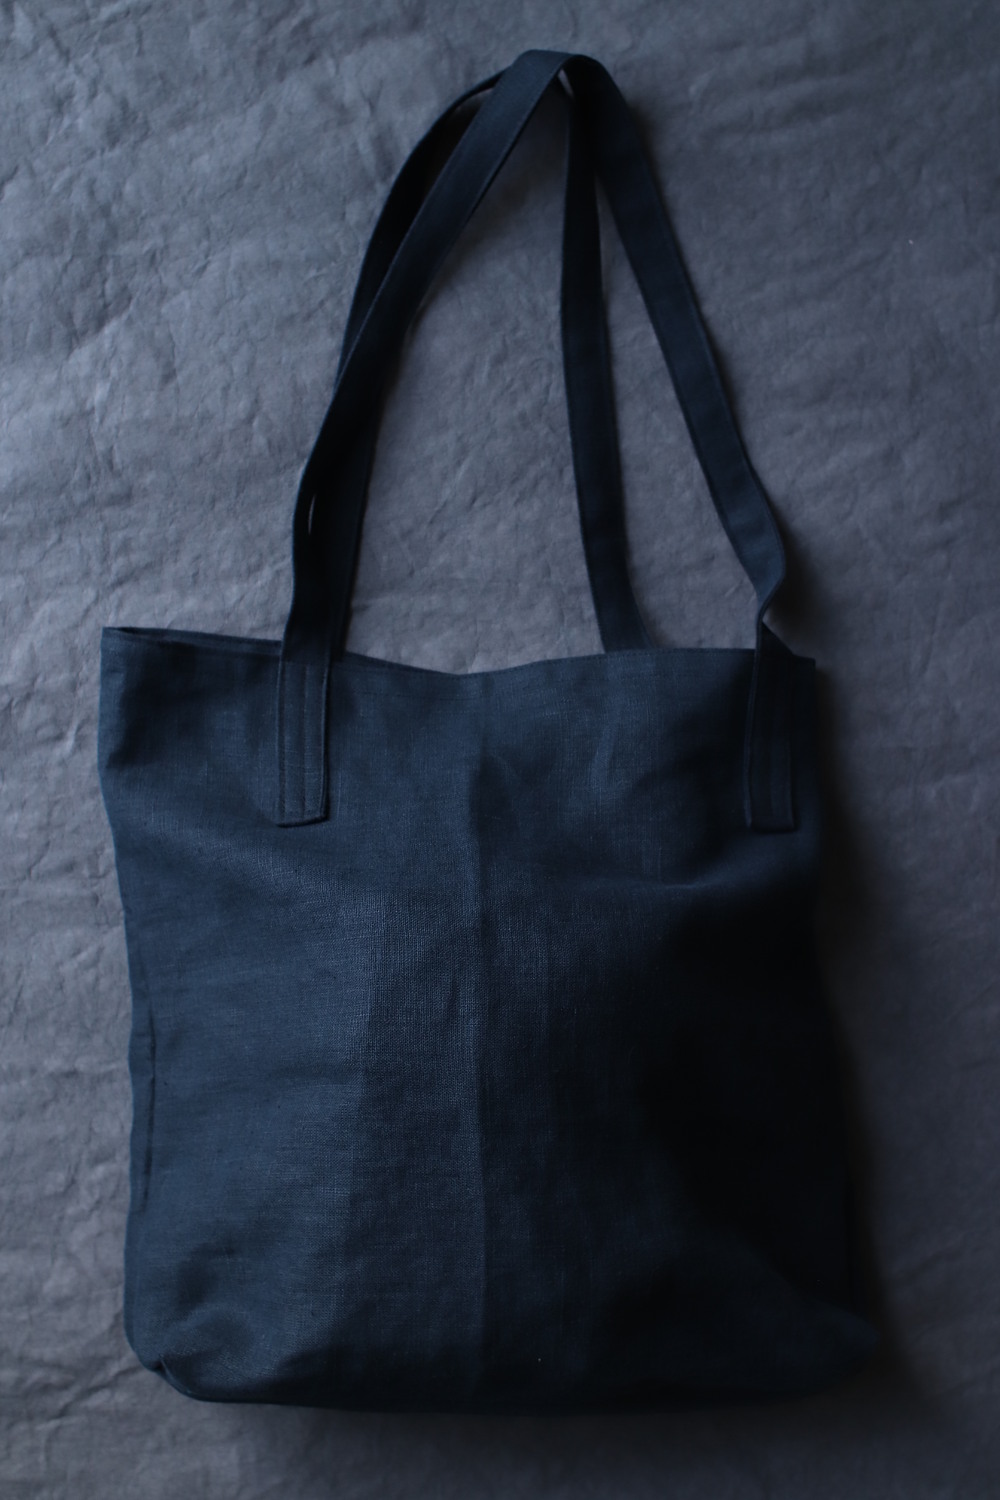 Czarna torba lniana Czarny Bez - torba duża w rodzaju torby na zakupy z dwoma dość długimi uchwytami również lnianymi. Tło grafitowe.